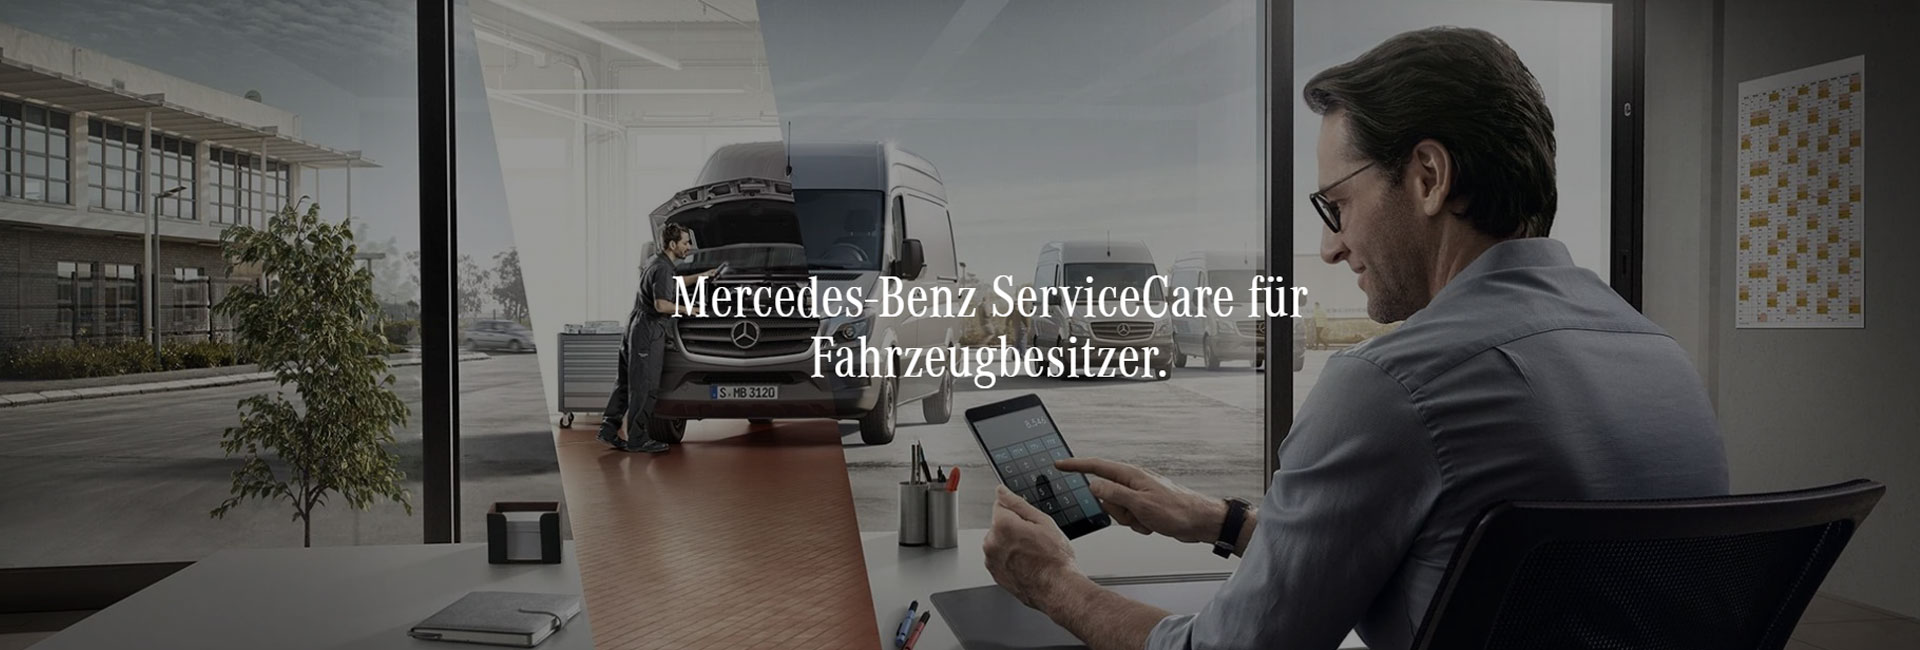 Mercedes-Benz-ServiceCare-für-Fahrzeugbesitzer-merceses-brinkmann